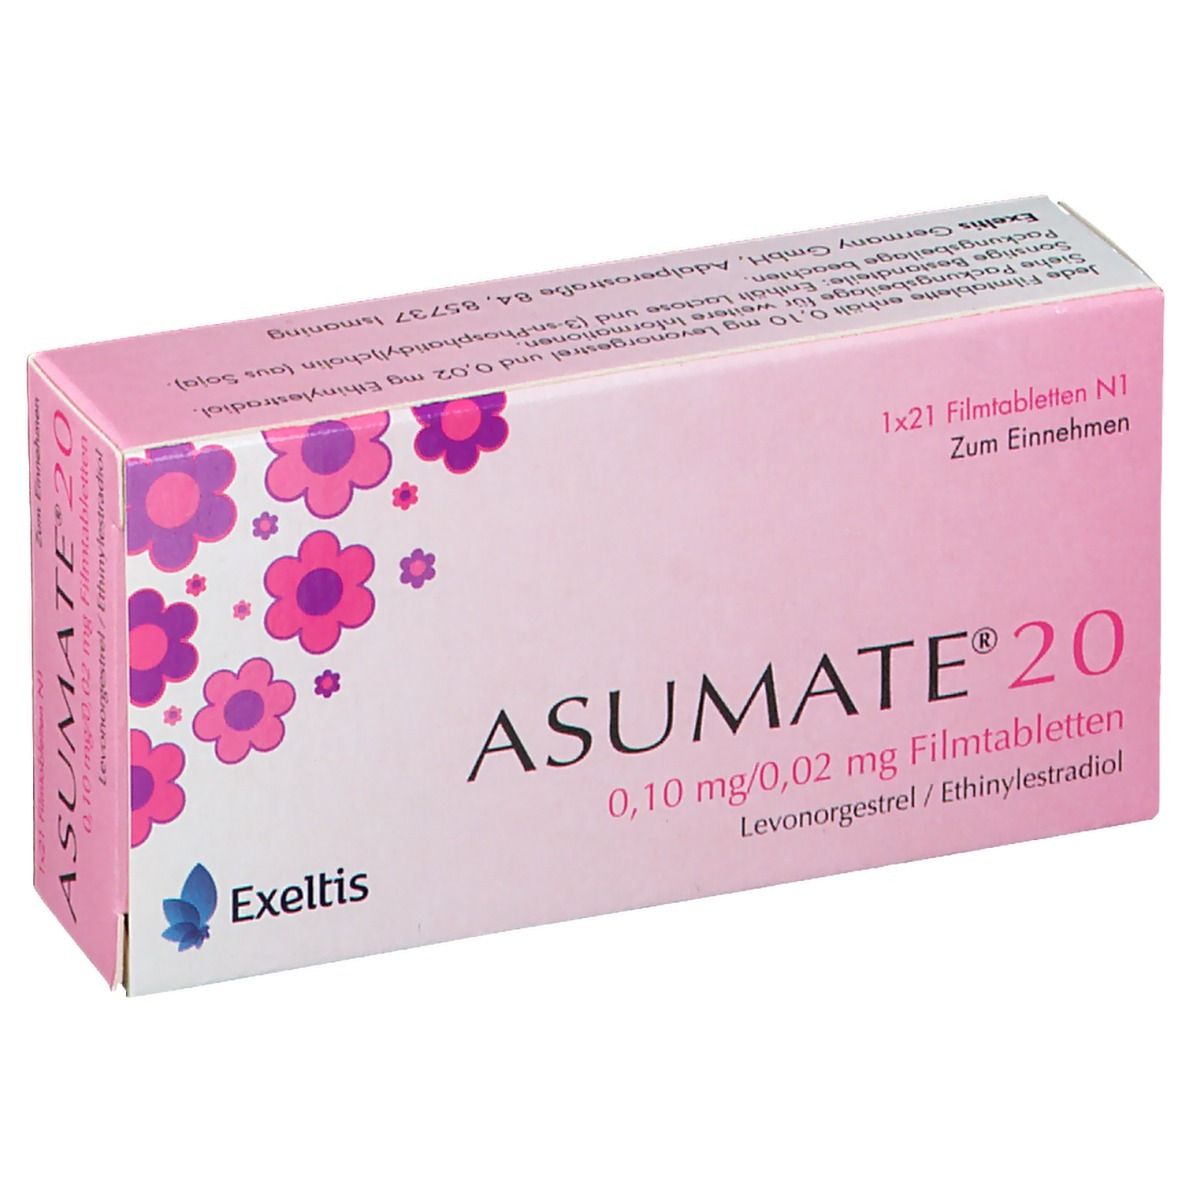 Nebenwirkungen asumate 20 ASUMATE® 20